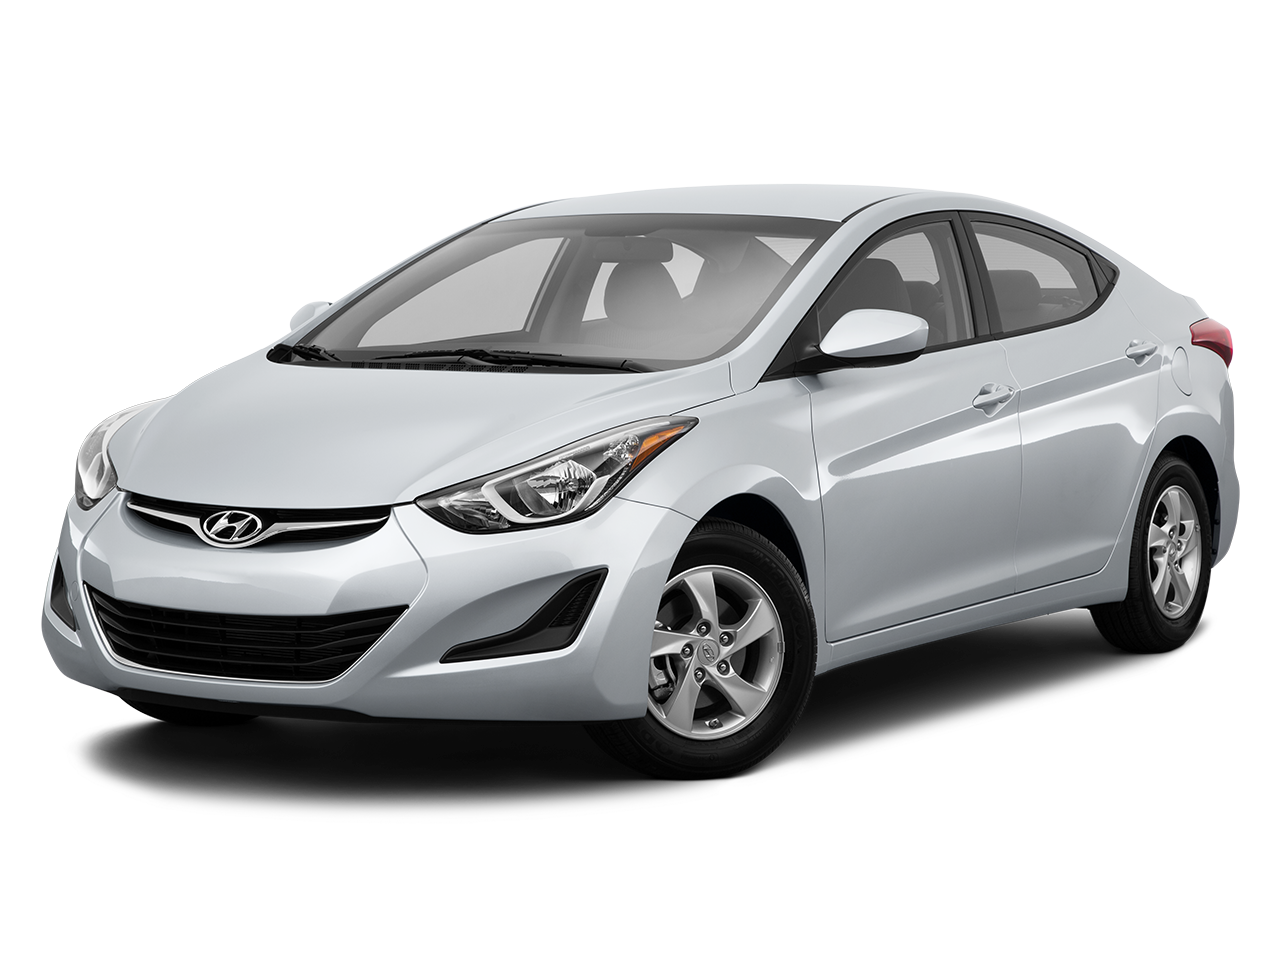 Car insurance for Hyundai Sonata Hybrid